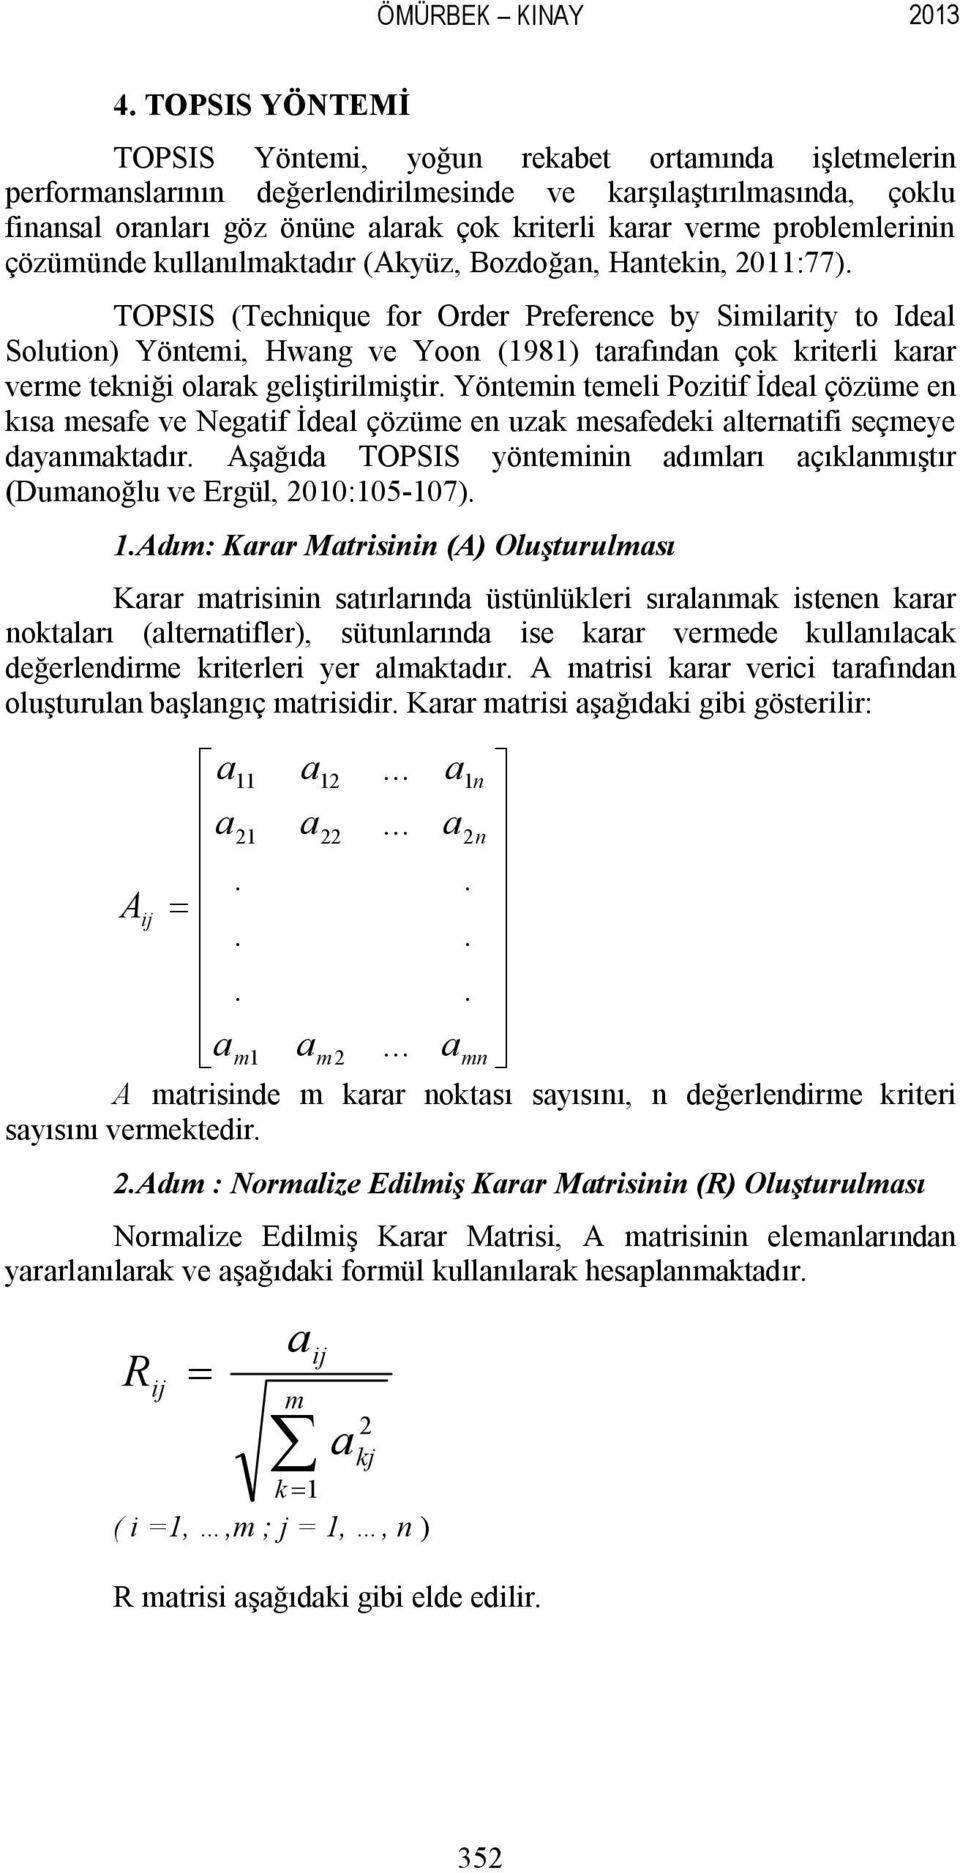 problemlerinin çözümünde kullanılmaktadır (Akyüz, Bozdoğan, Hantekin, 2011:77).